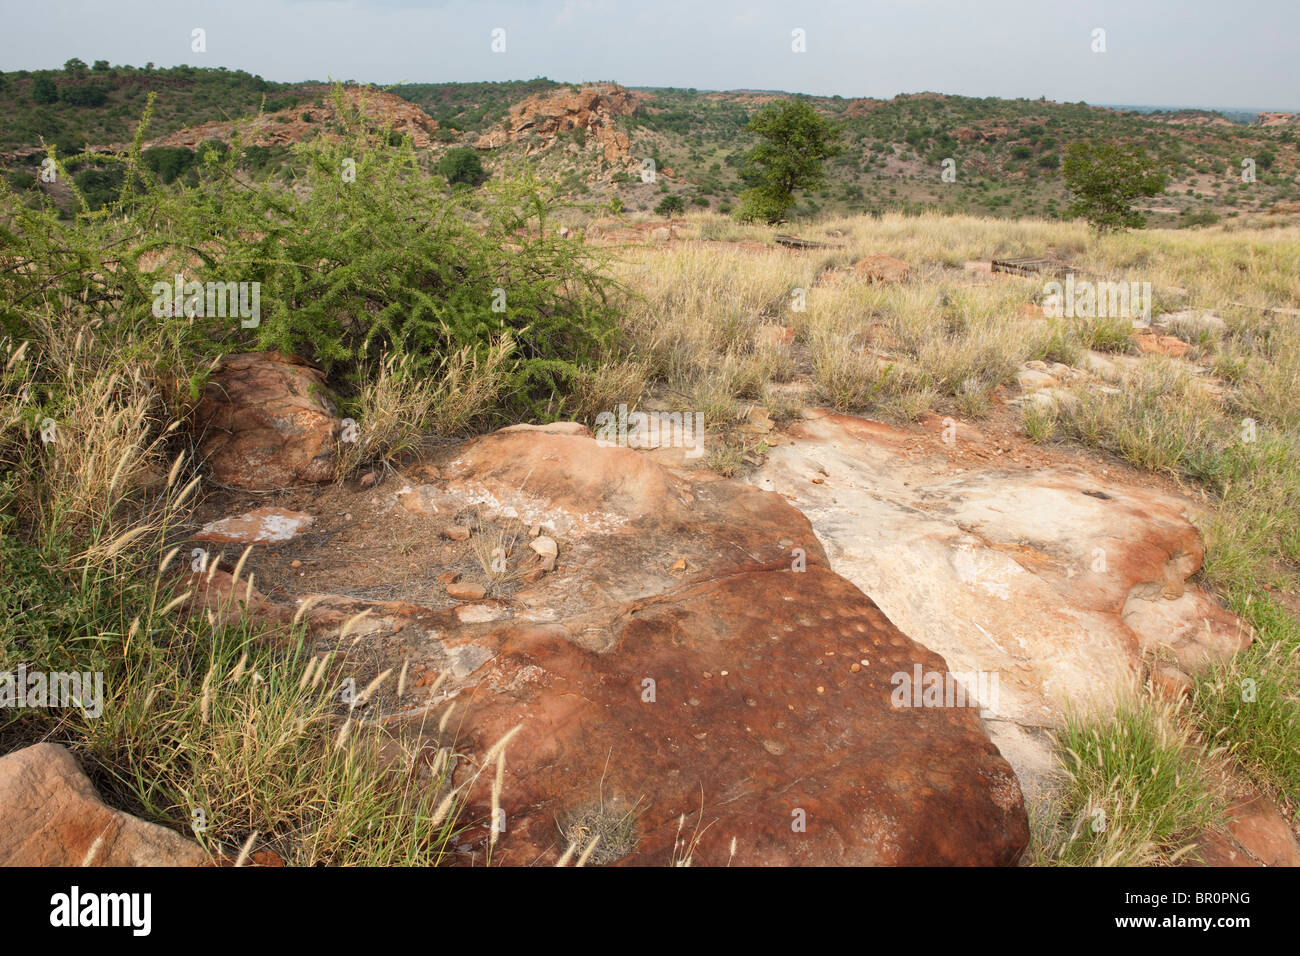 Bao juego encontrado en Mapungubwe Hill, sitio arqueológico, el Parque Nacional de Mapungubwe, Sudáfrica Foto de stock